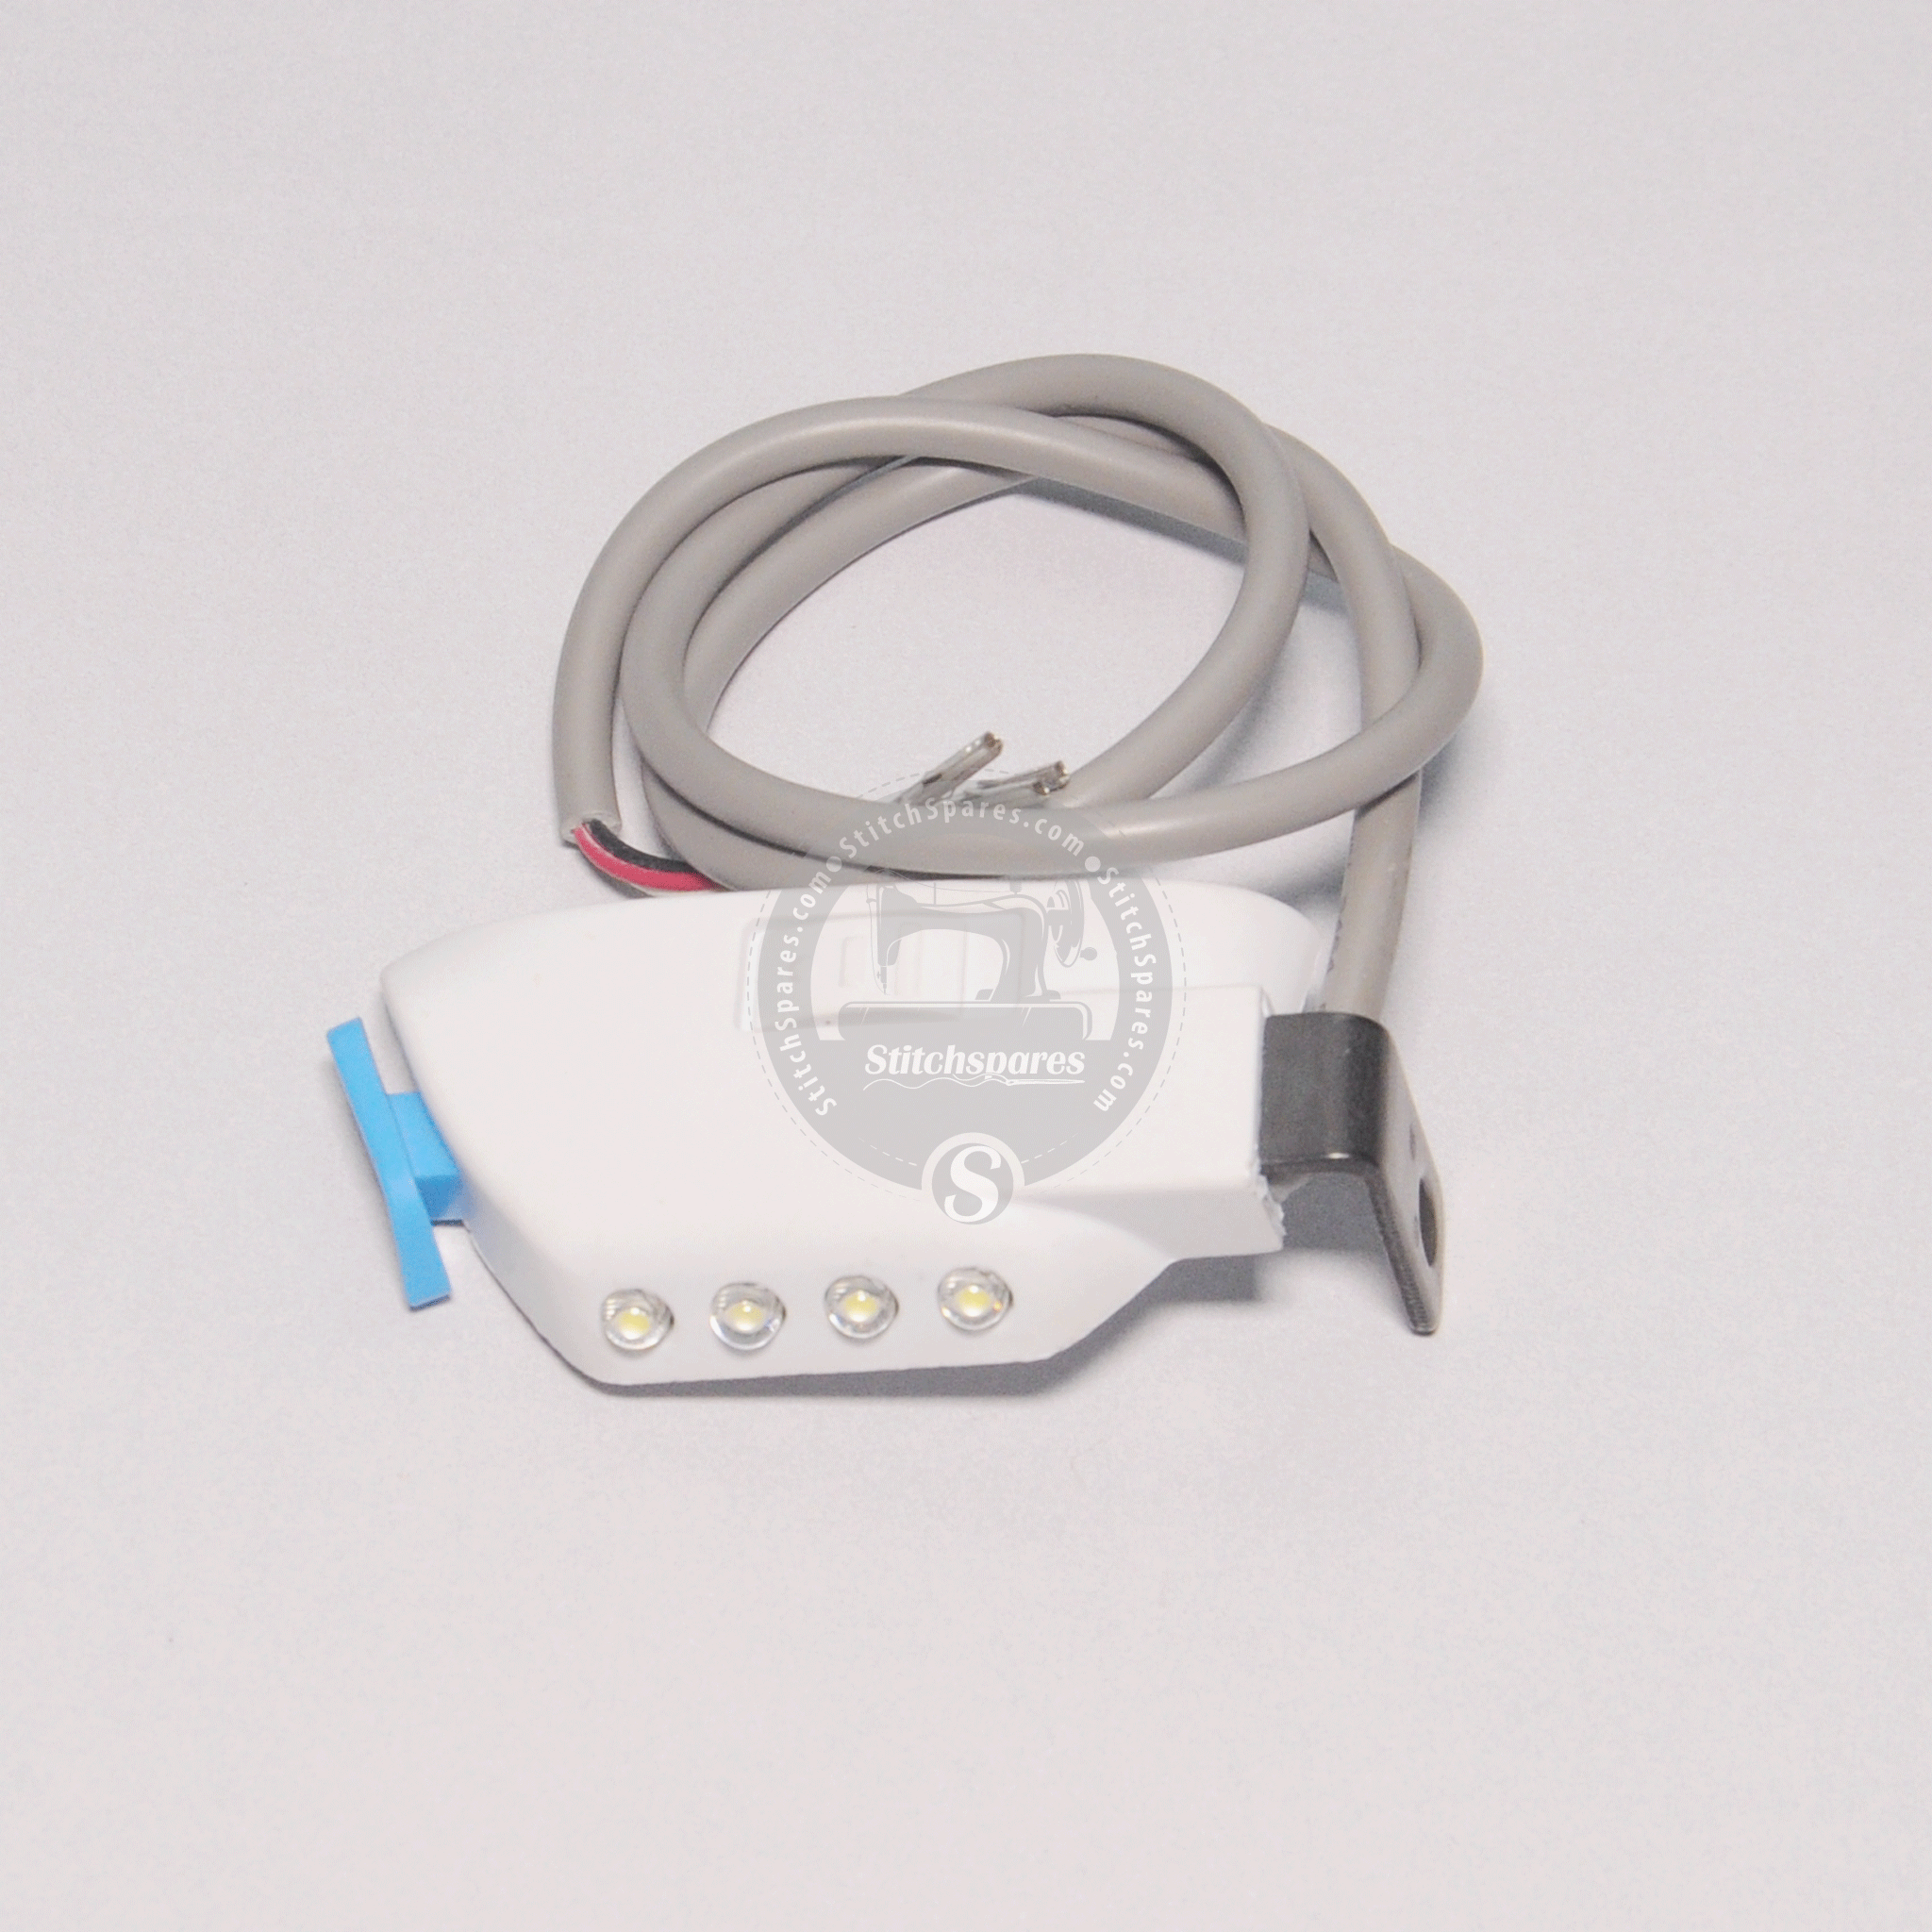 #1013001900 जैक F4 सिंगल सुई लॉक-सिलाई सिलाई मशीन स्पेयर पार्ट के लिए एलईडी लाइट